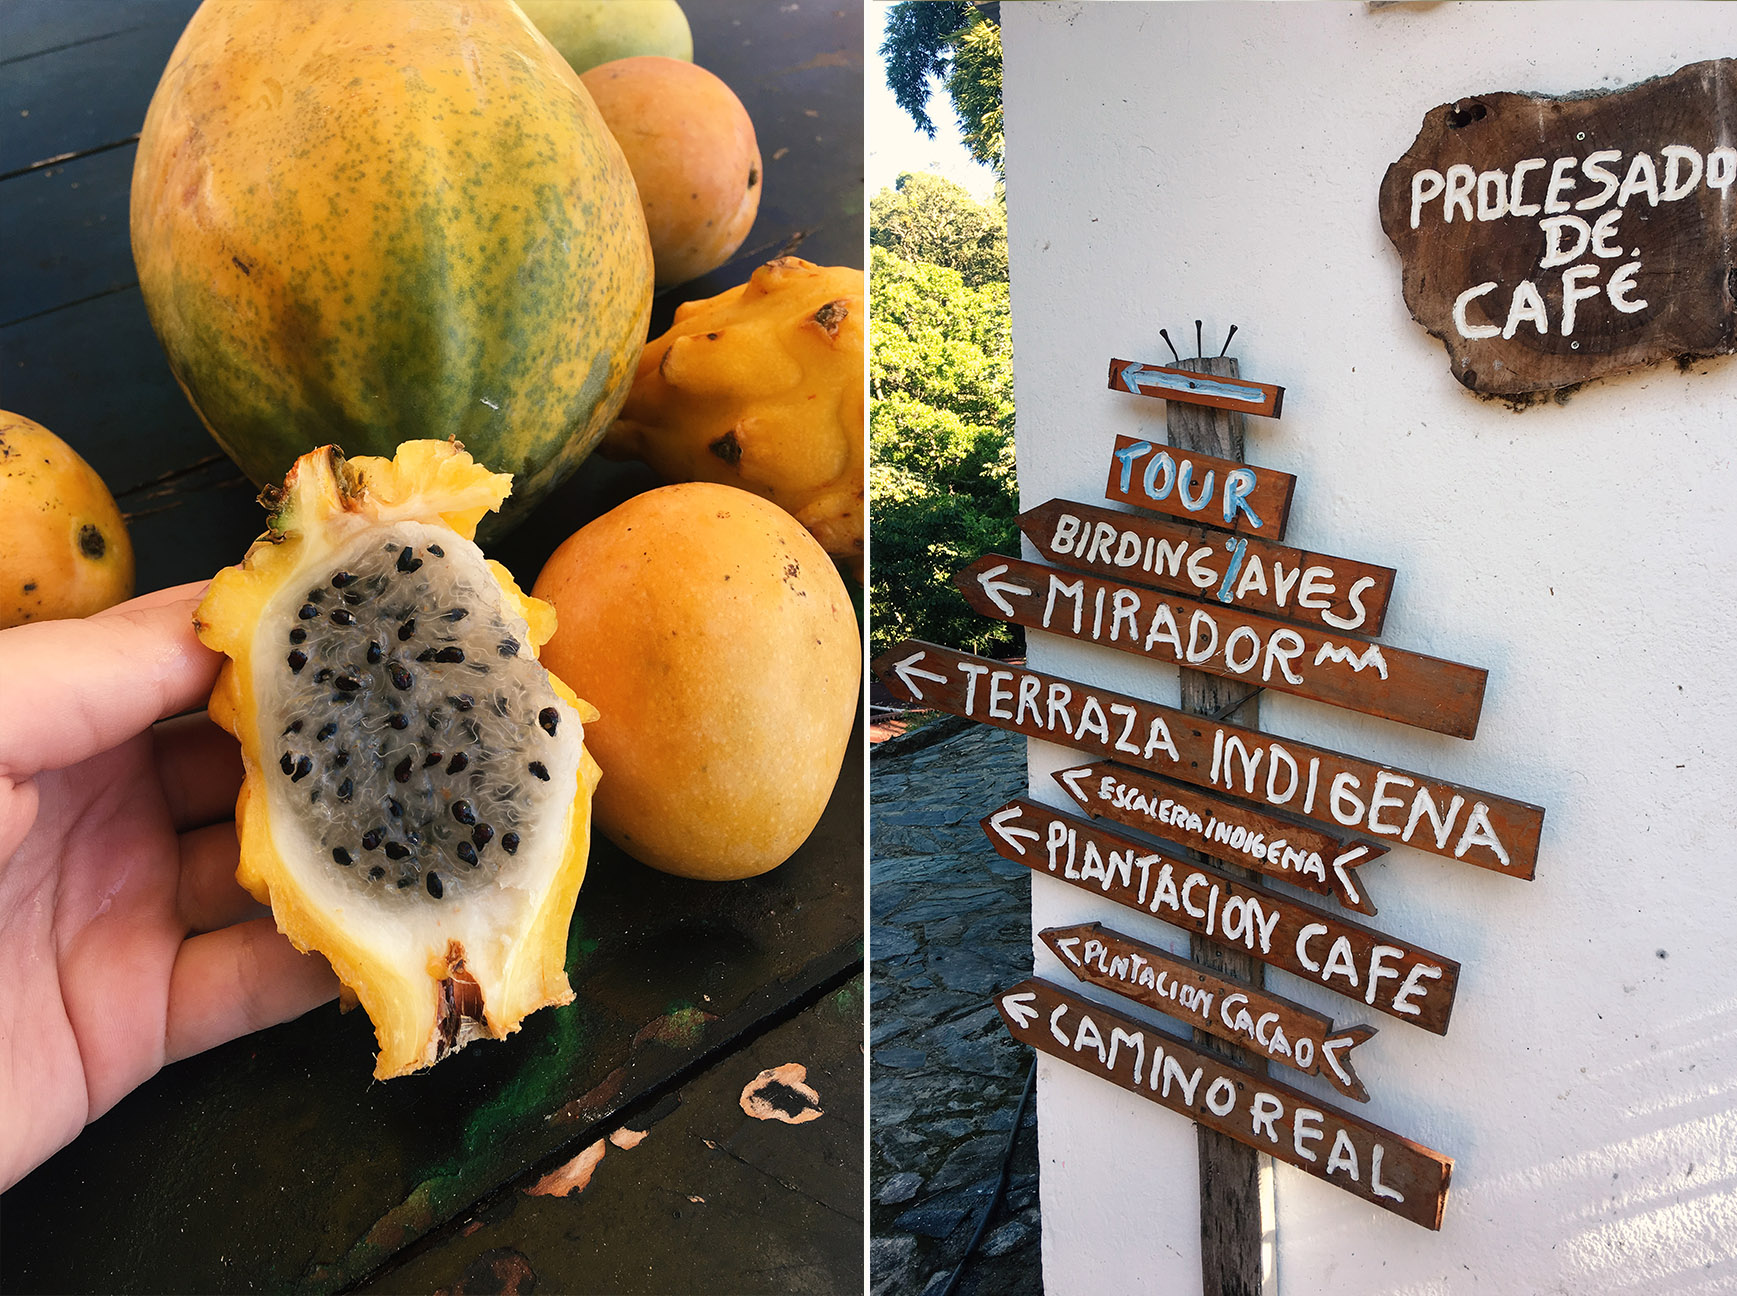 Pestovanie kakaa a kávy v Kolumbii - Finca San Rafael